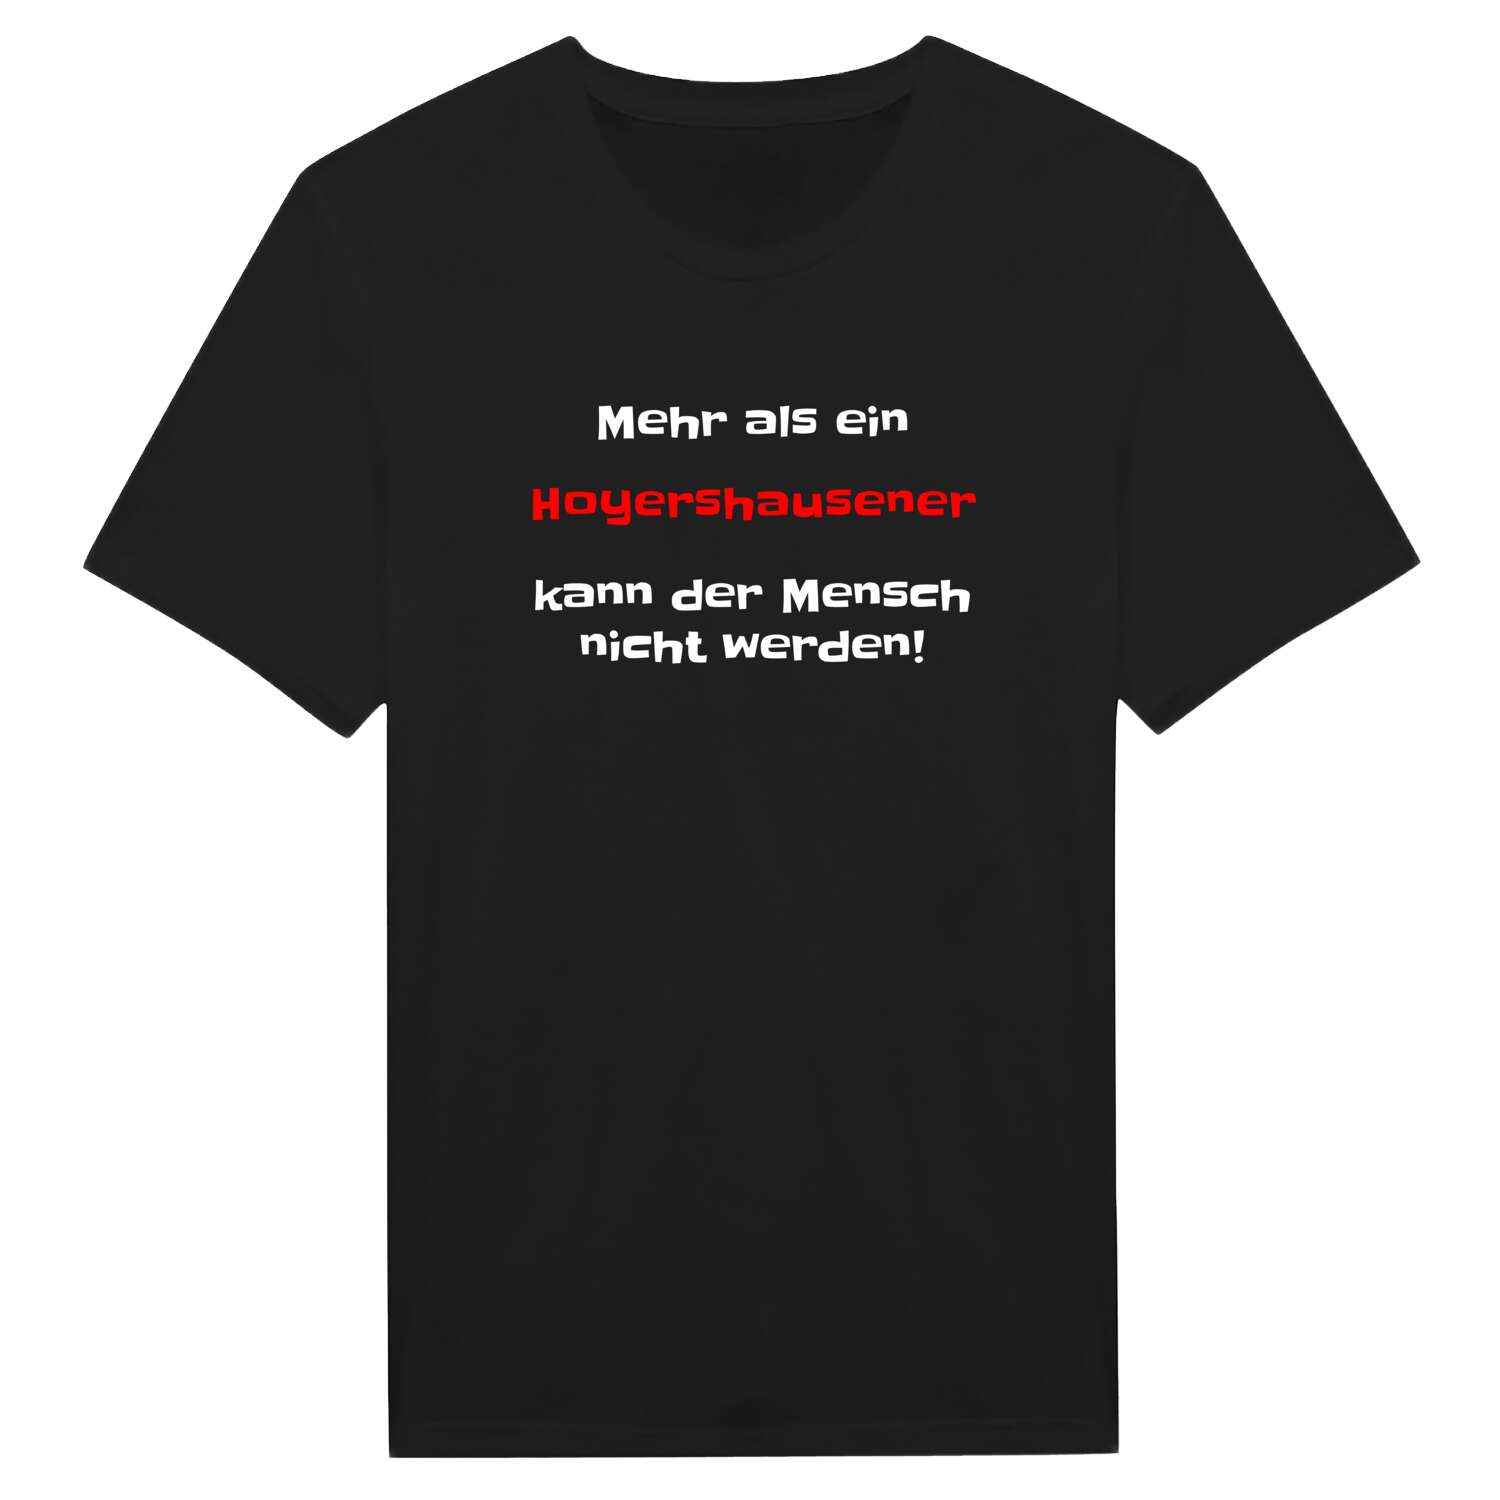 Hoyershausen T-Shirt »Mehr als ein«